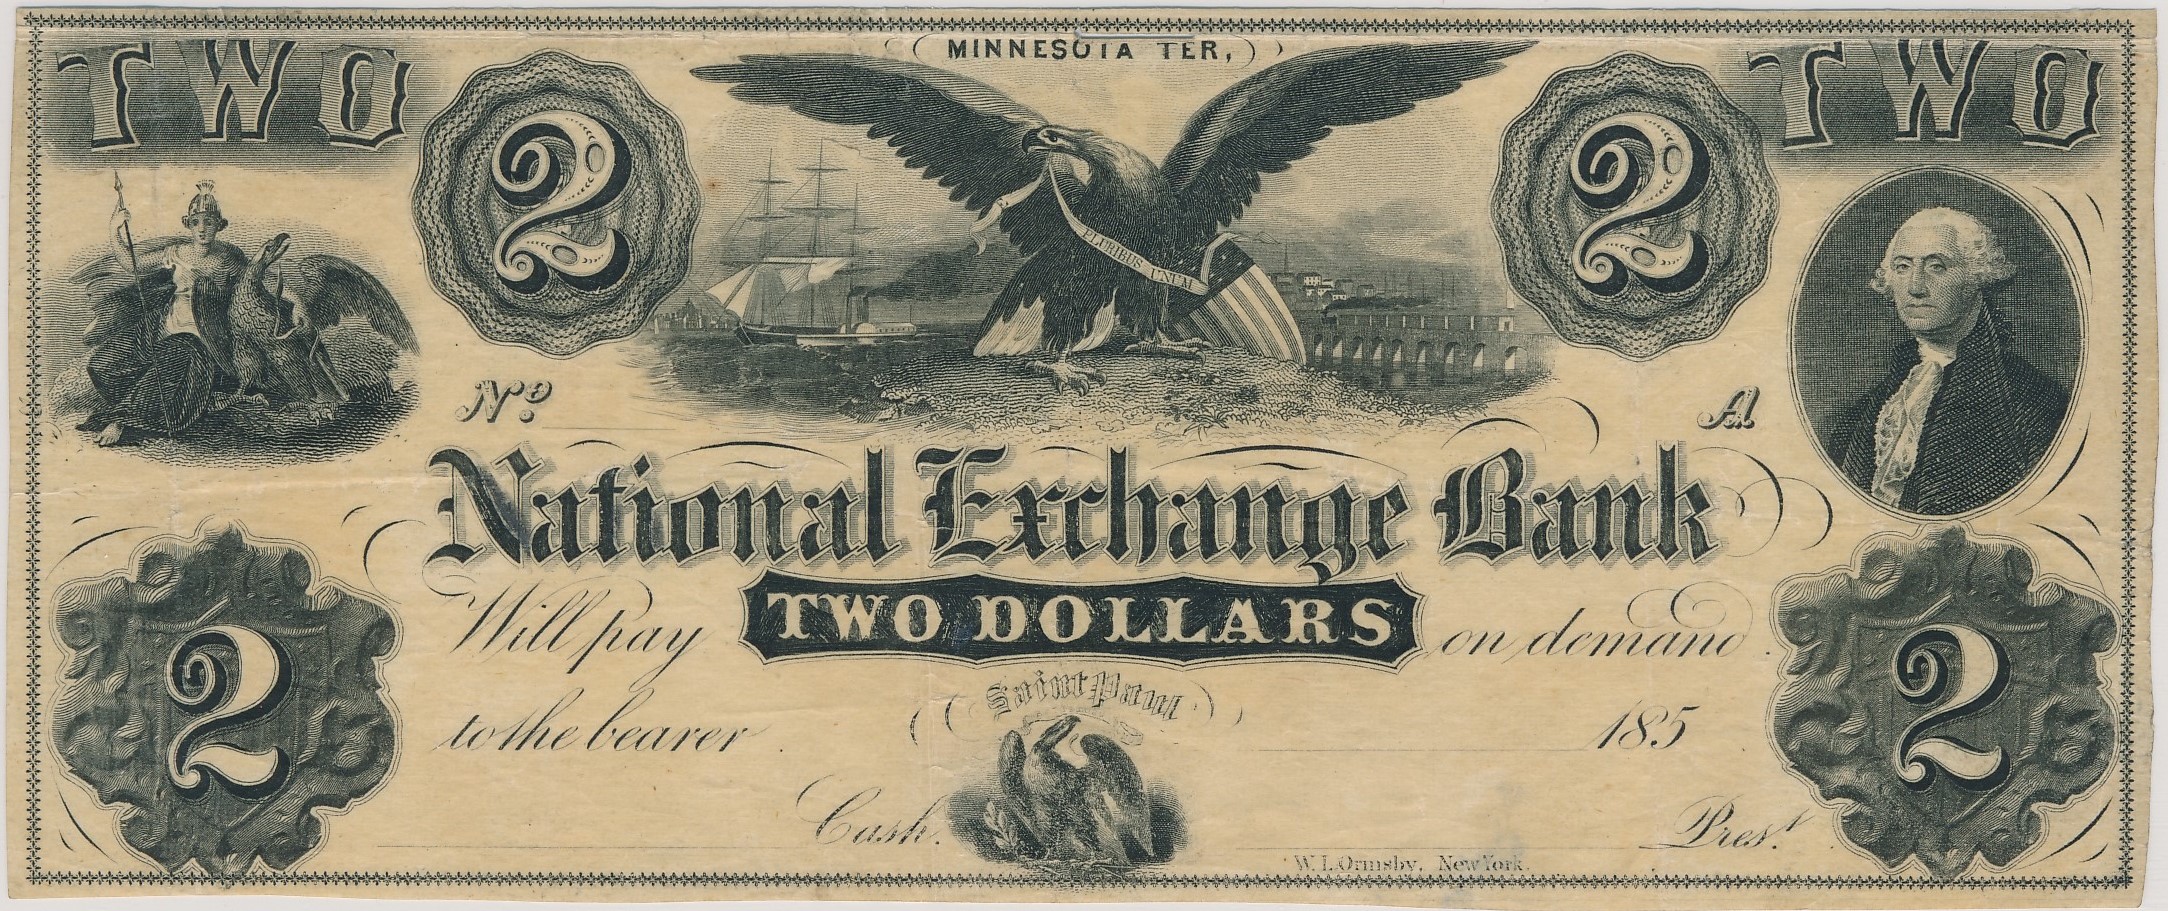 $2 National Exchange Bank